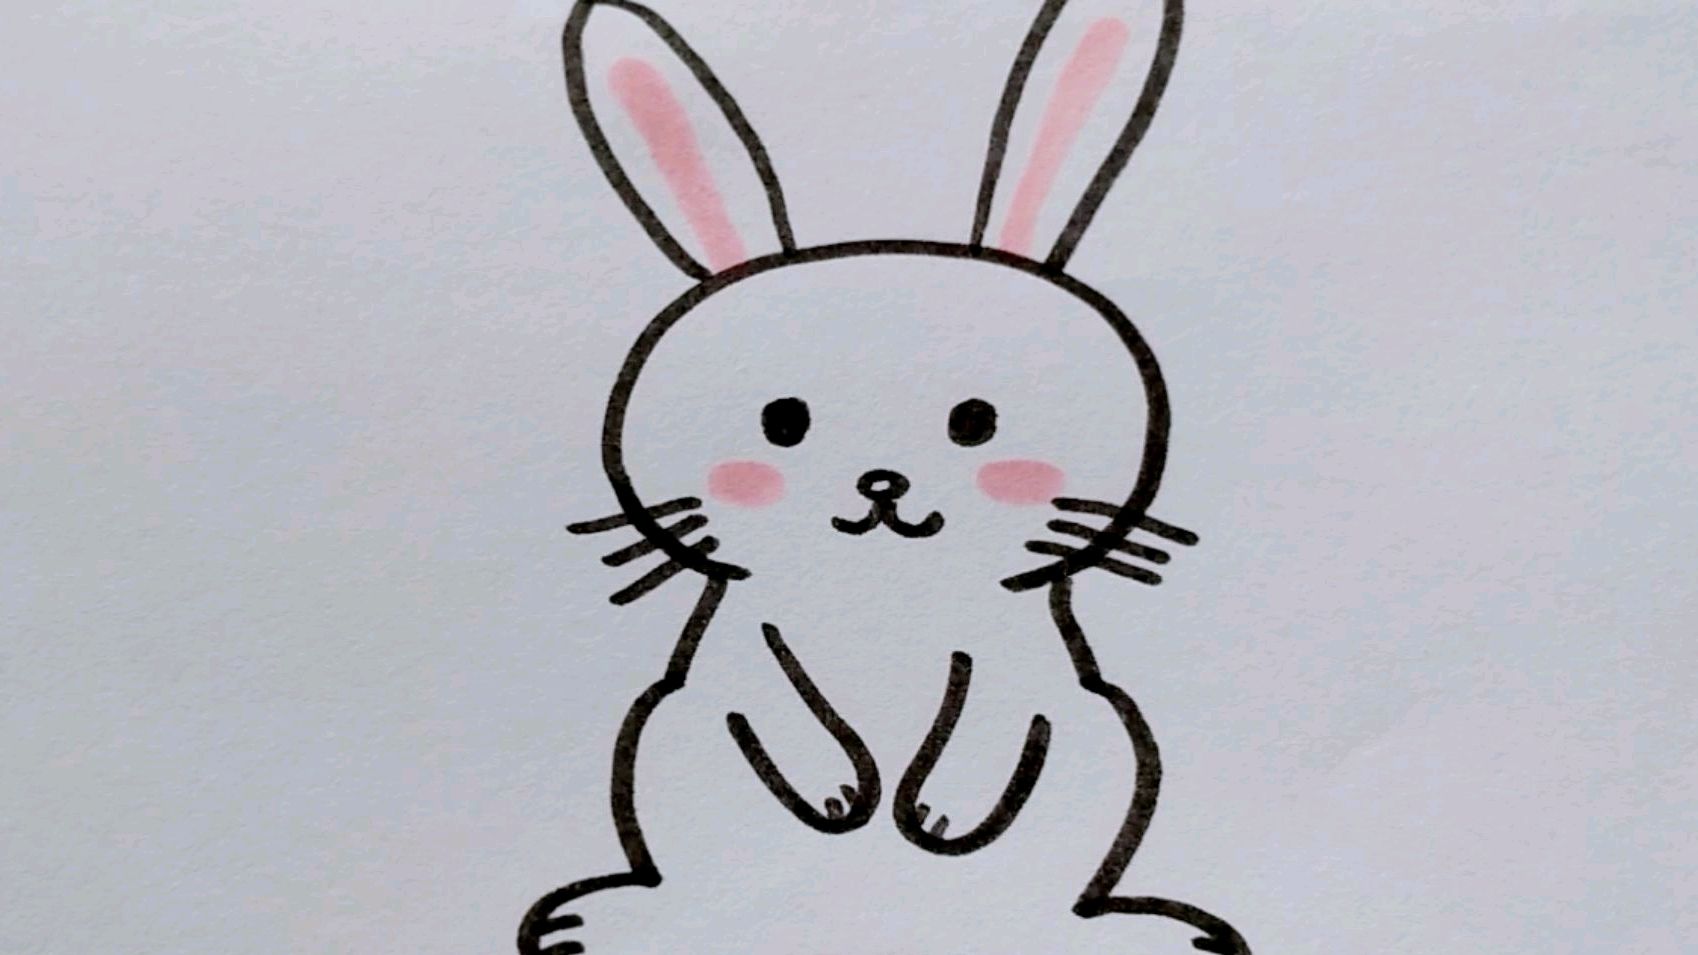 5组超可爱兔子简笔画大全_兔子简笔画